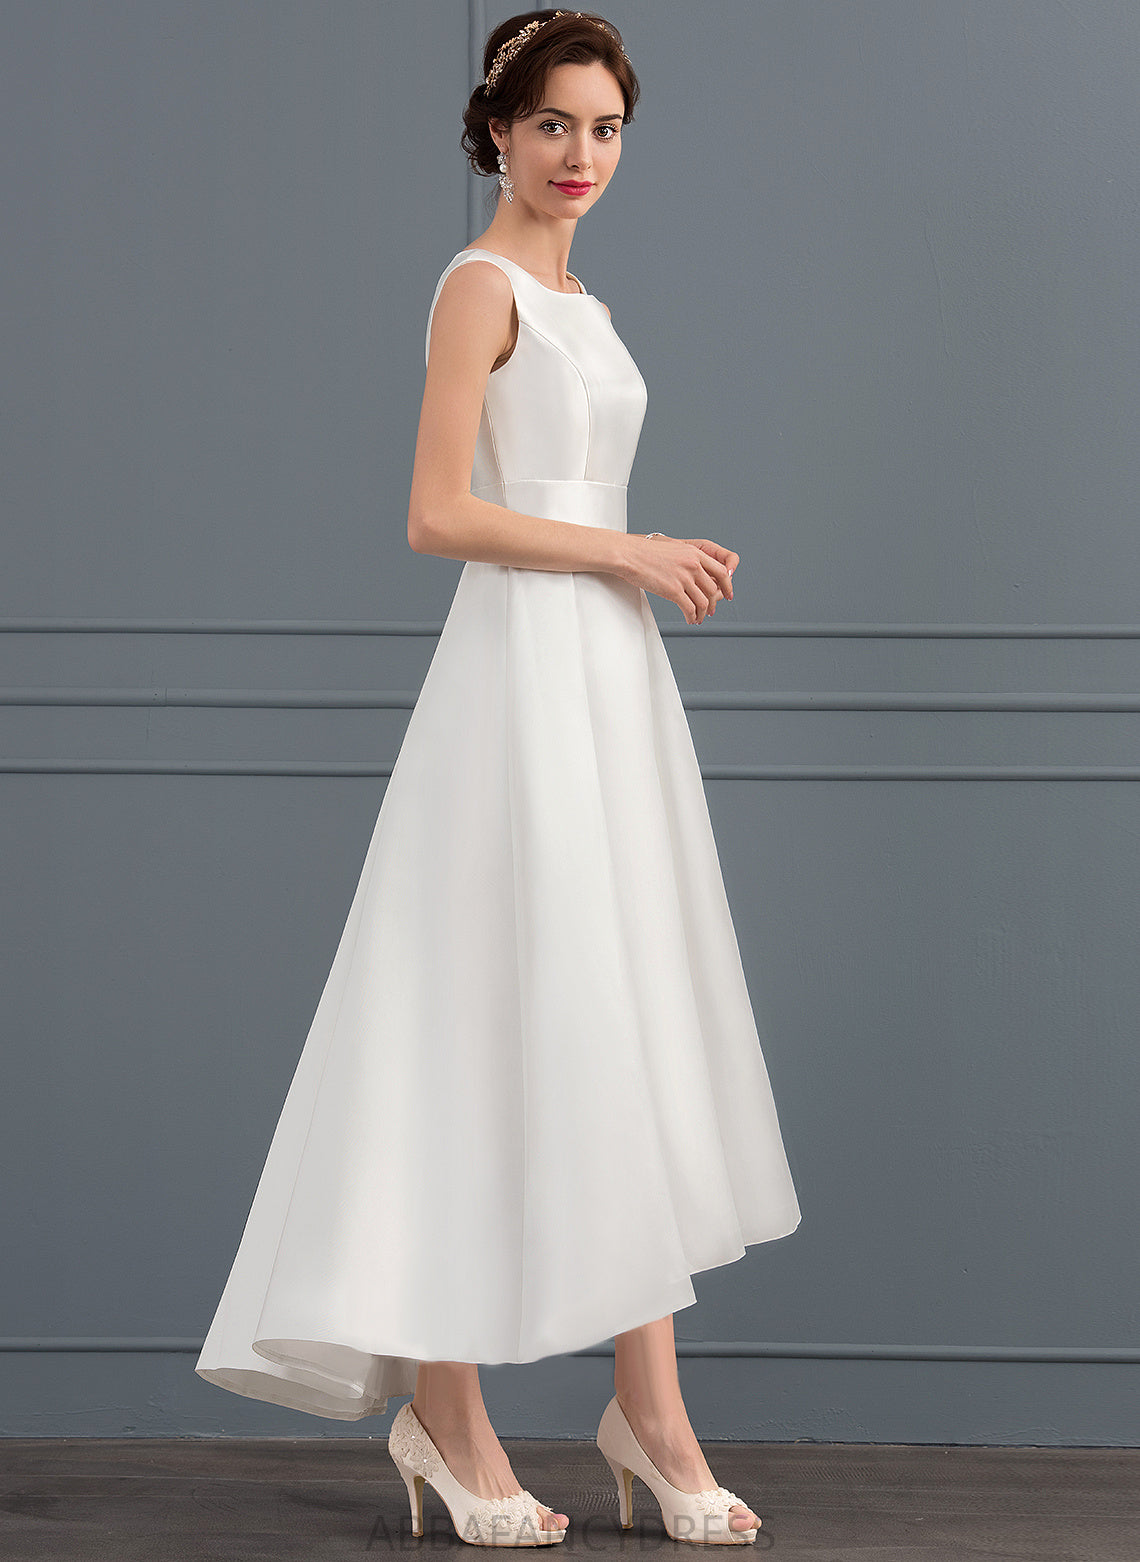 Square Wedding Dress Asymmetrical Satin A-Line Brianna Wedding Dresses